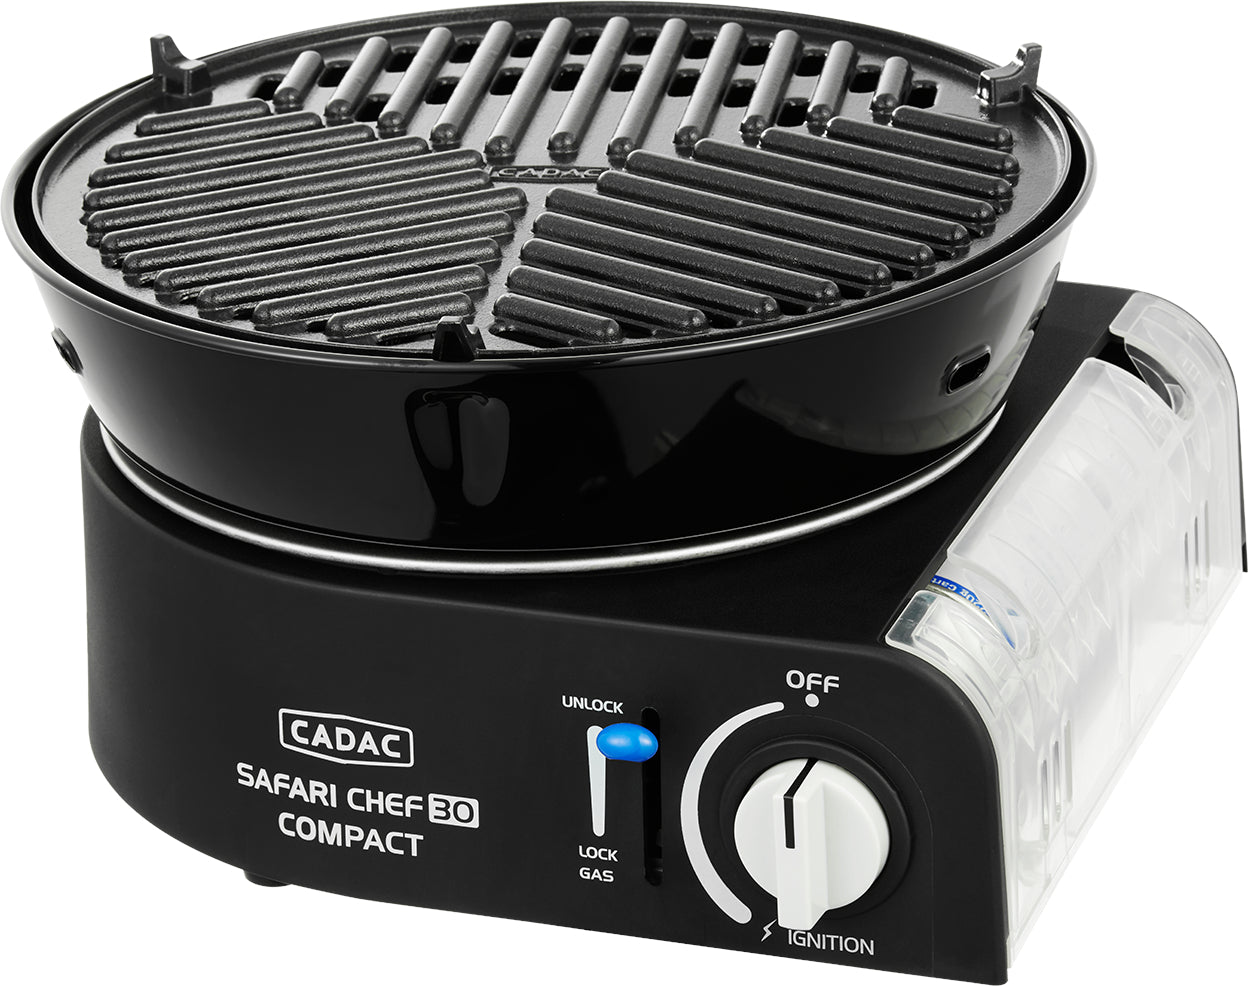 CADAC Safari Chef 30 Compact